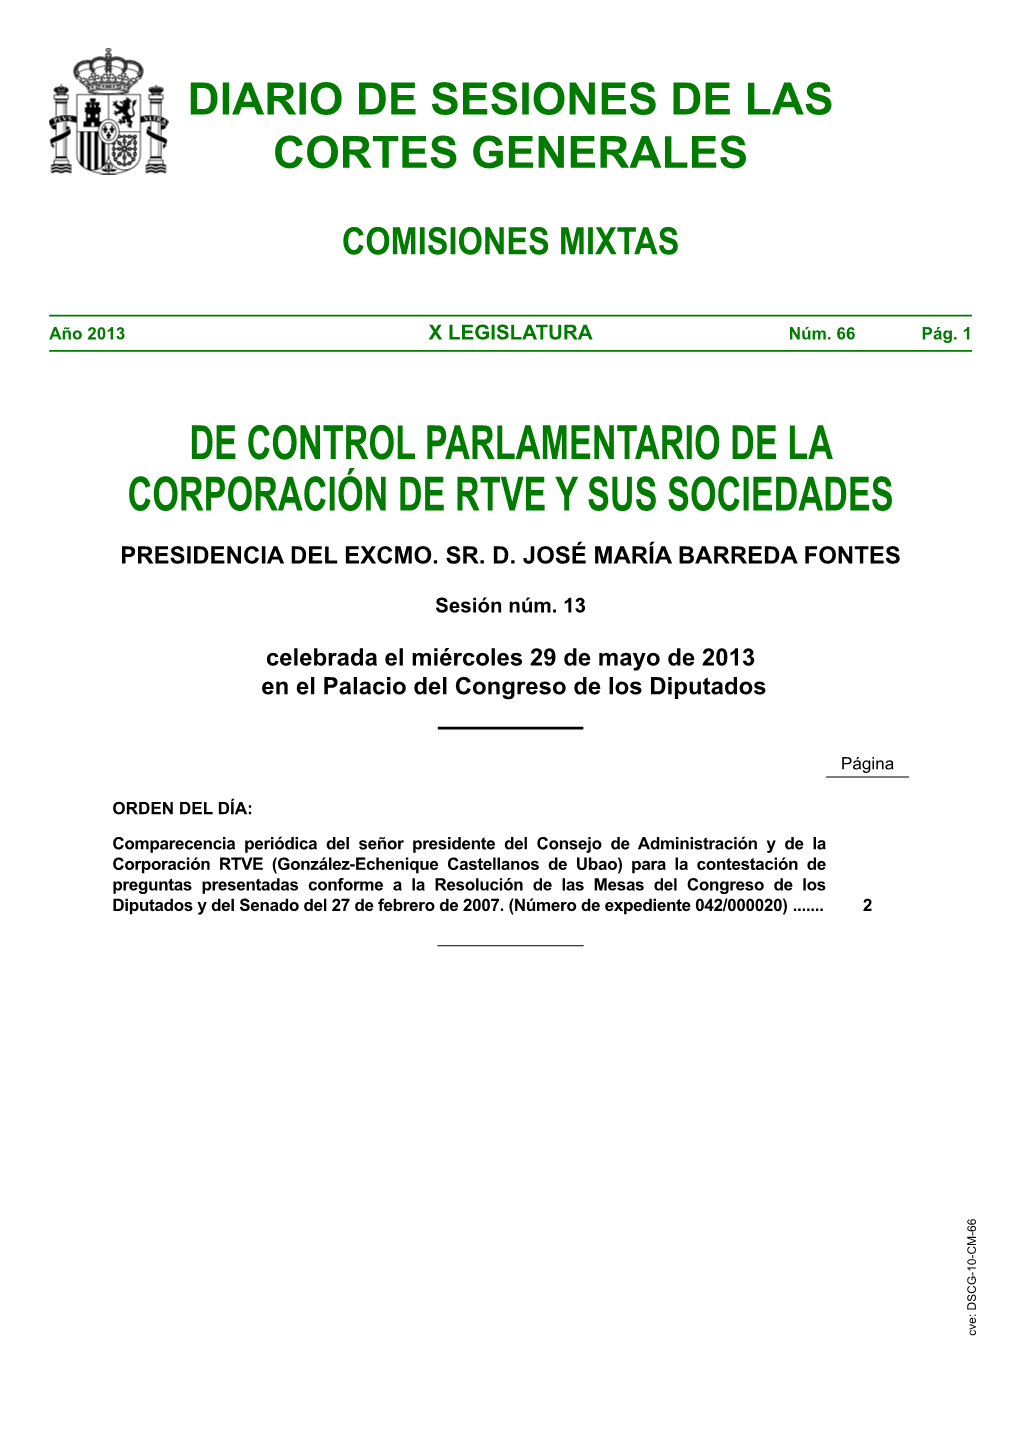 Diario De Sesiones De Comisiones Mixtas De Control Parlamentario De